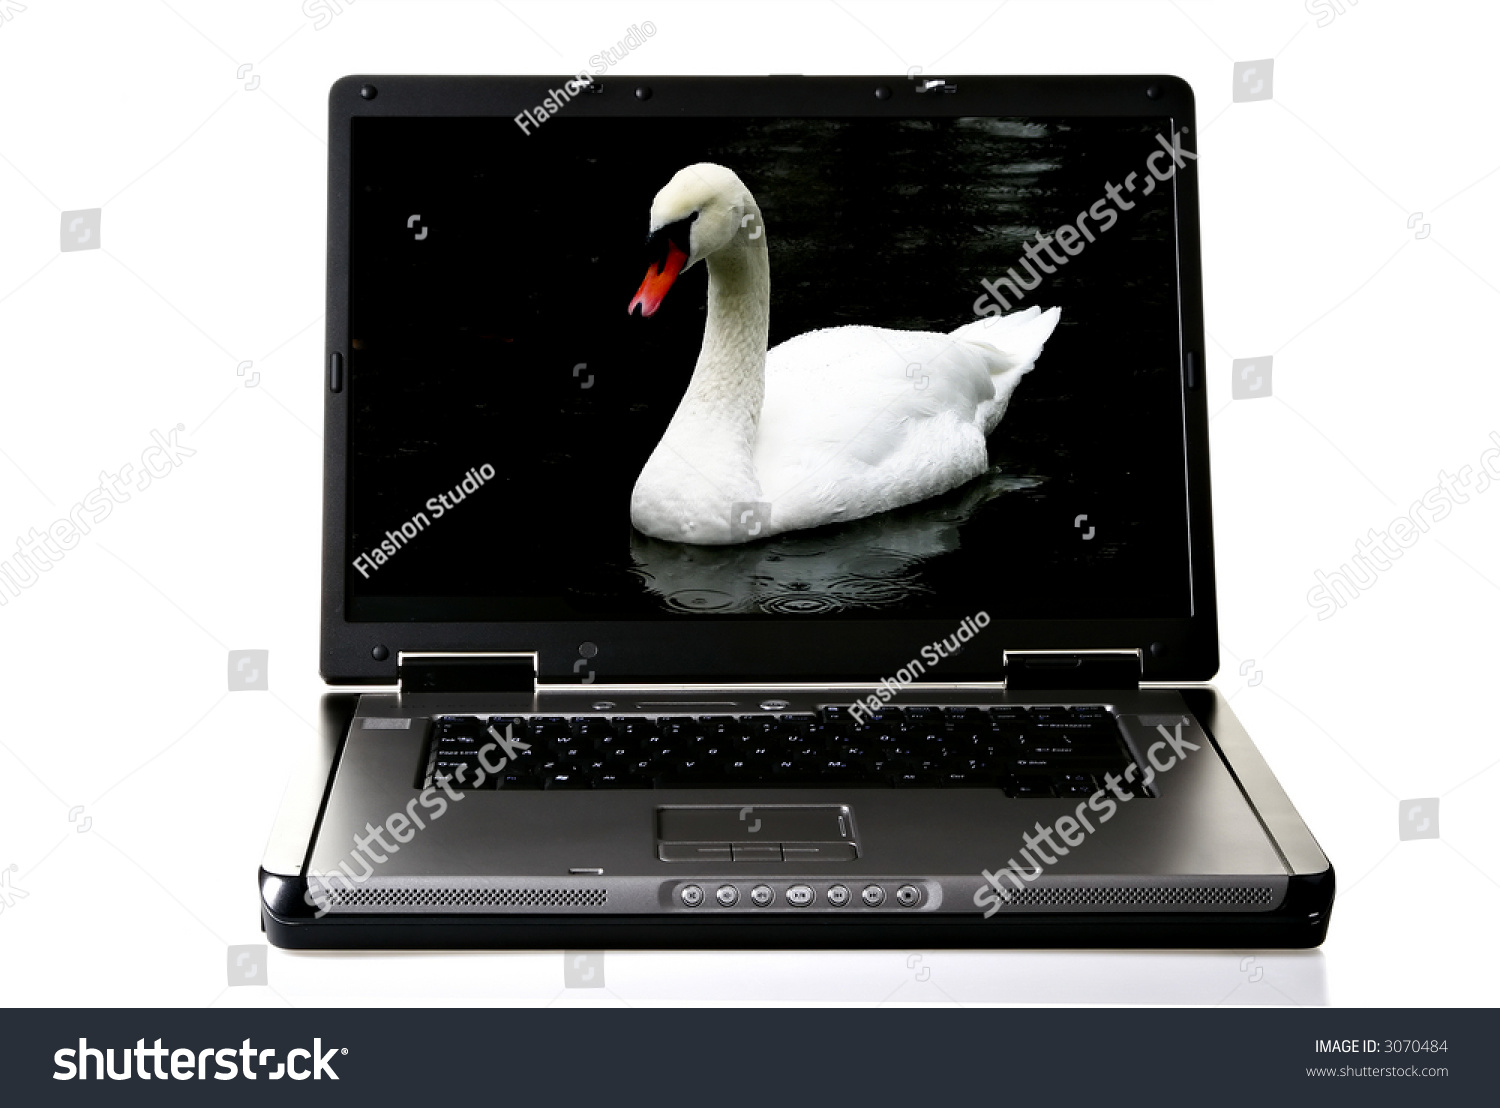 High Resolution Widescreen Laptop Stock Photo 3070484 - Shutterstock